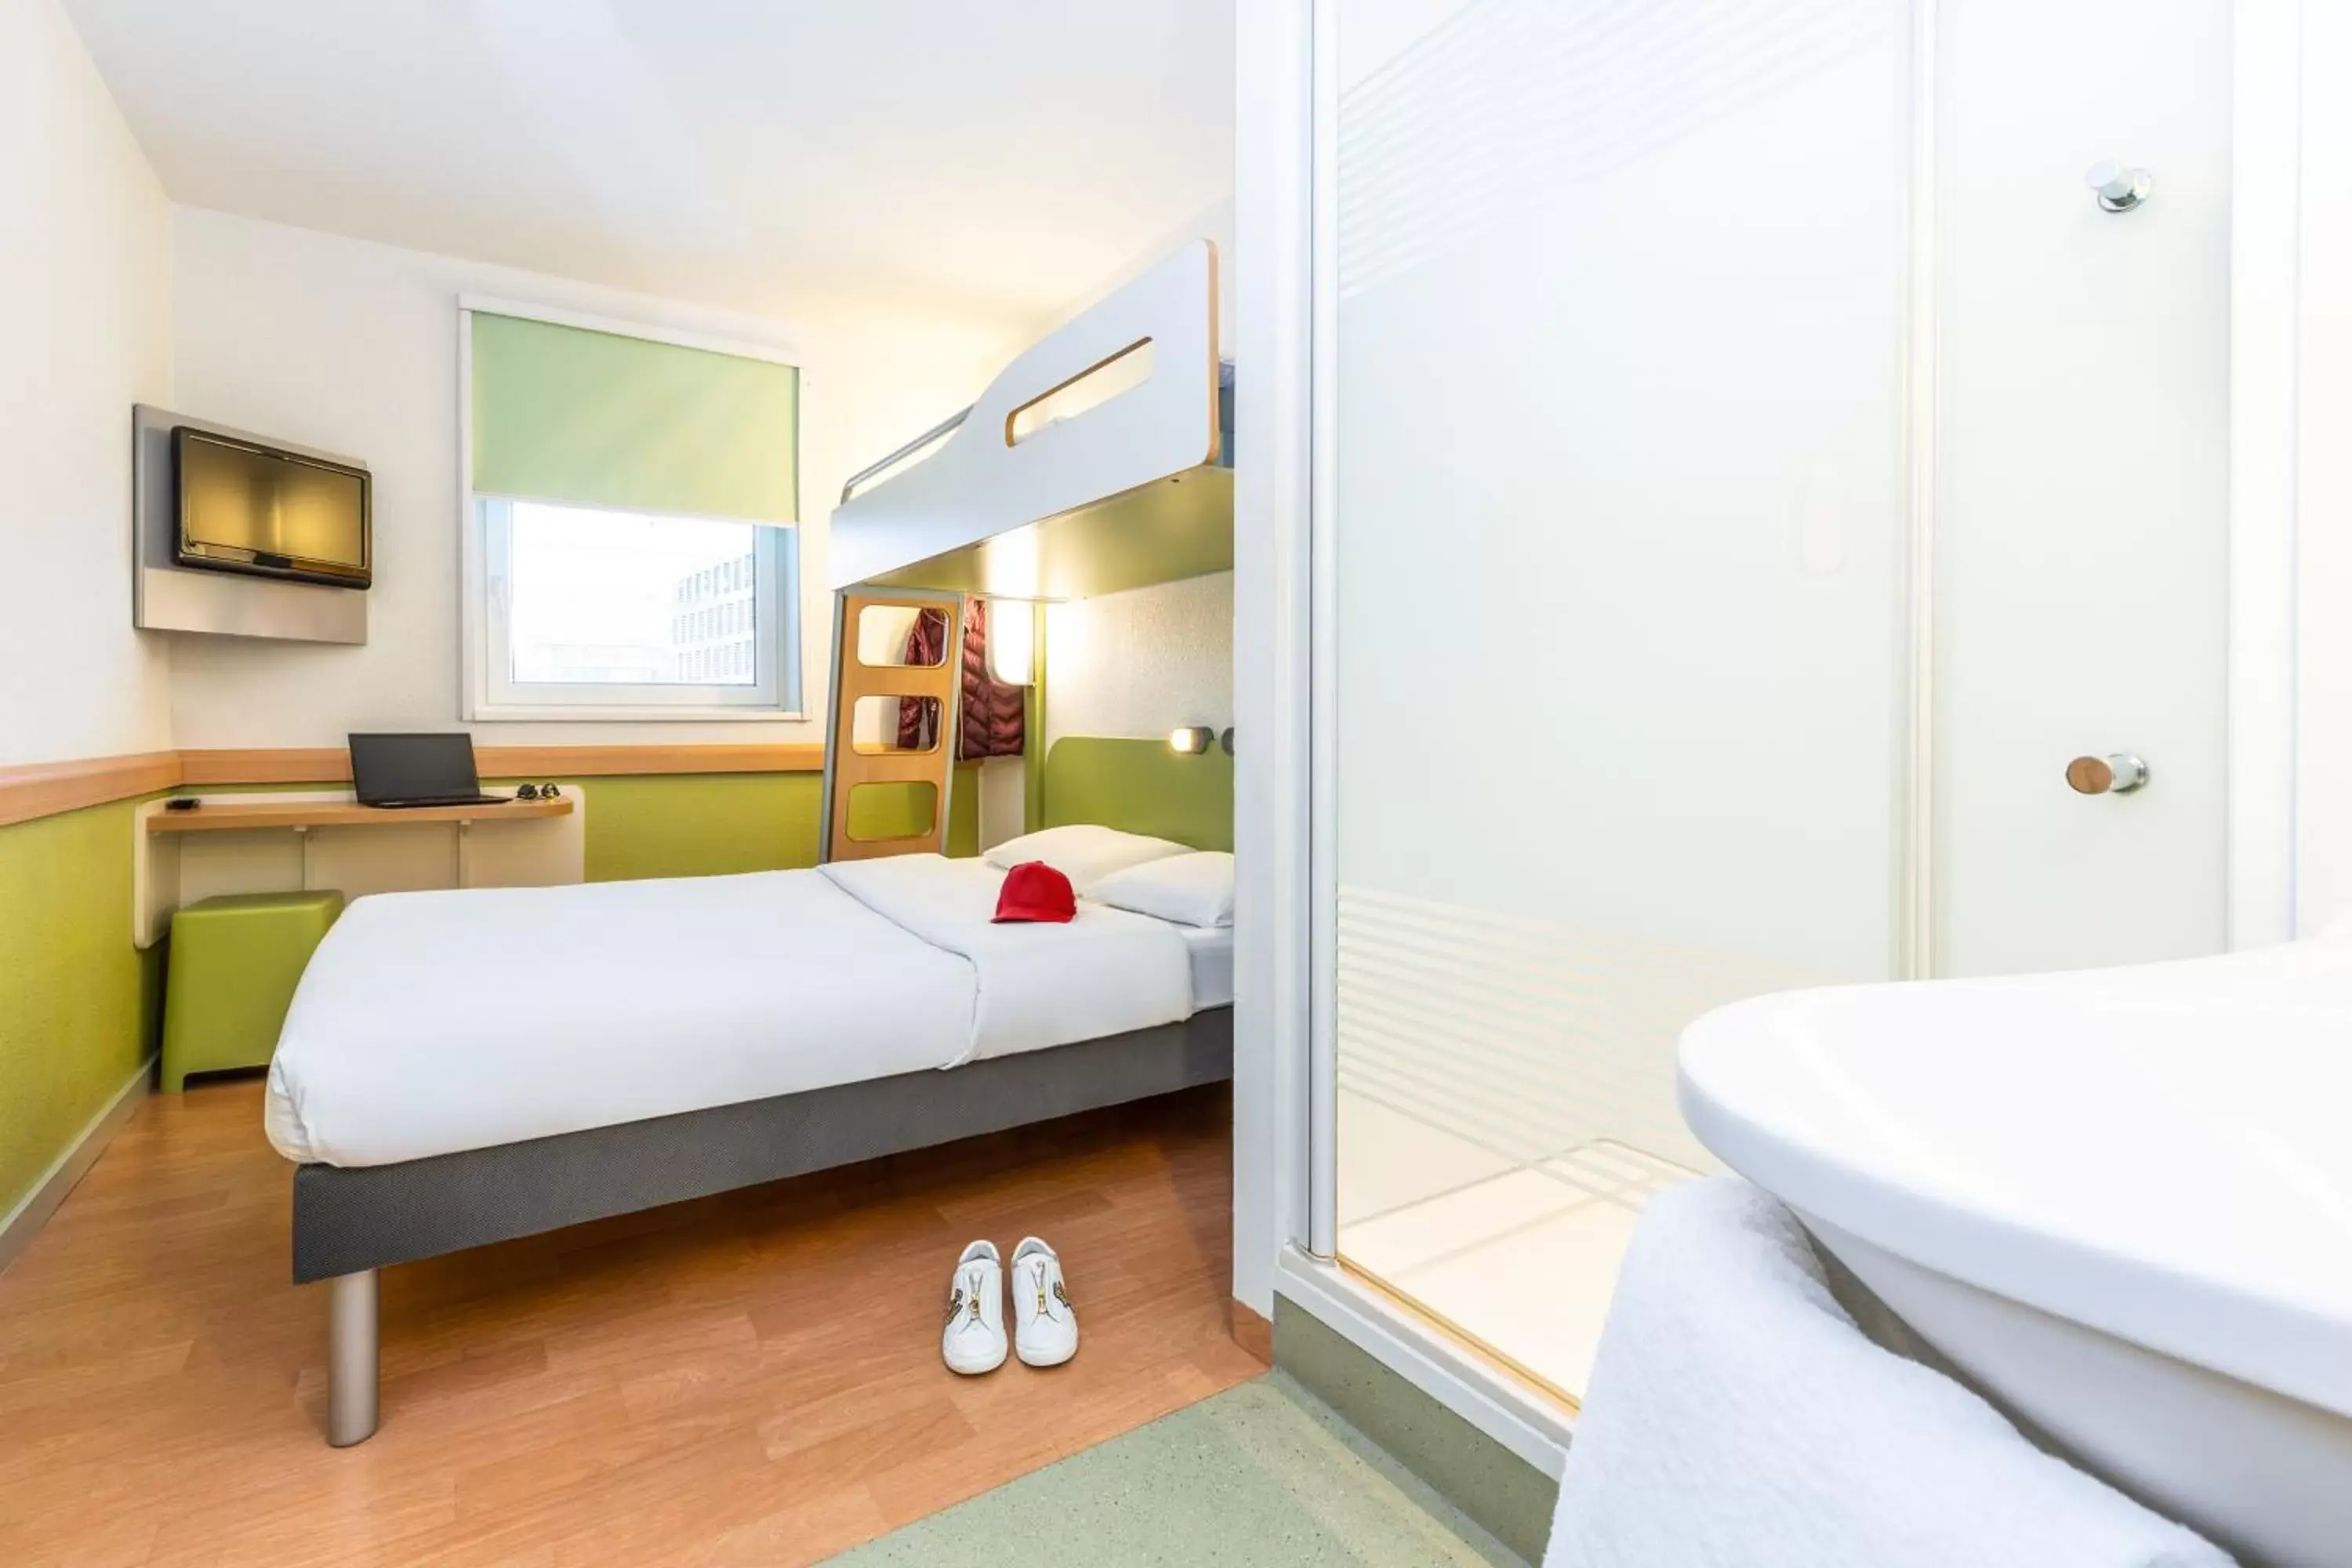 Bedroom, Bathroom in ibis budget Zurich City West